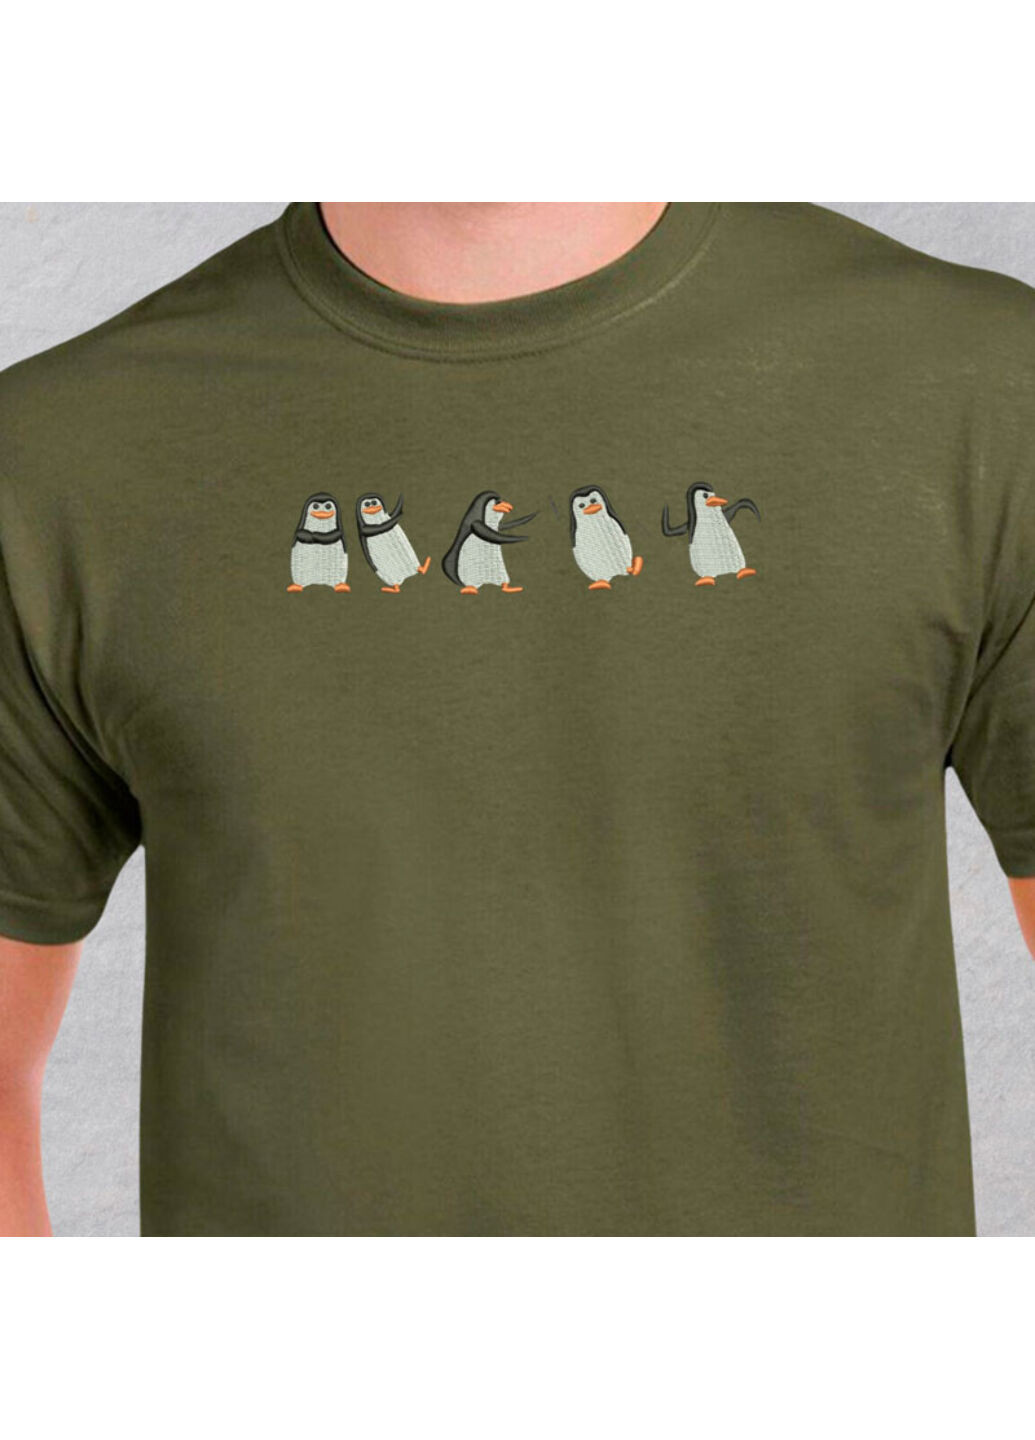 Хаки (оливковая) футболка с вышивкой пингвинов 01-4 мужская хаки s No Brand